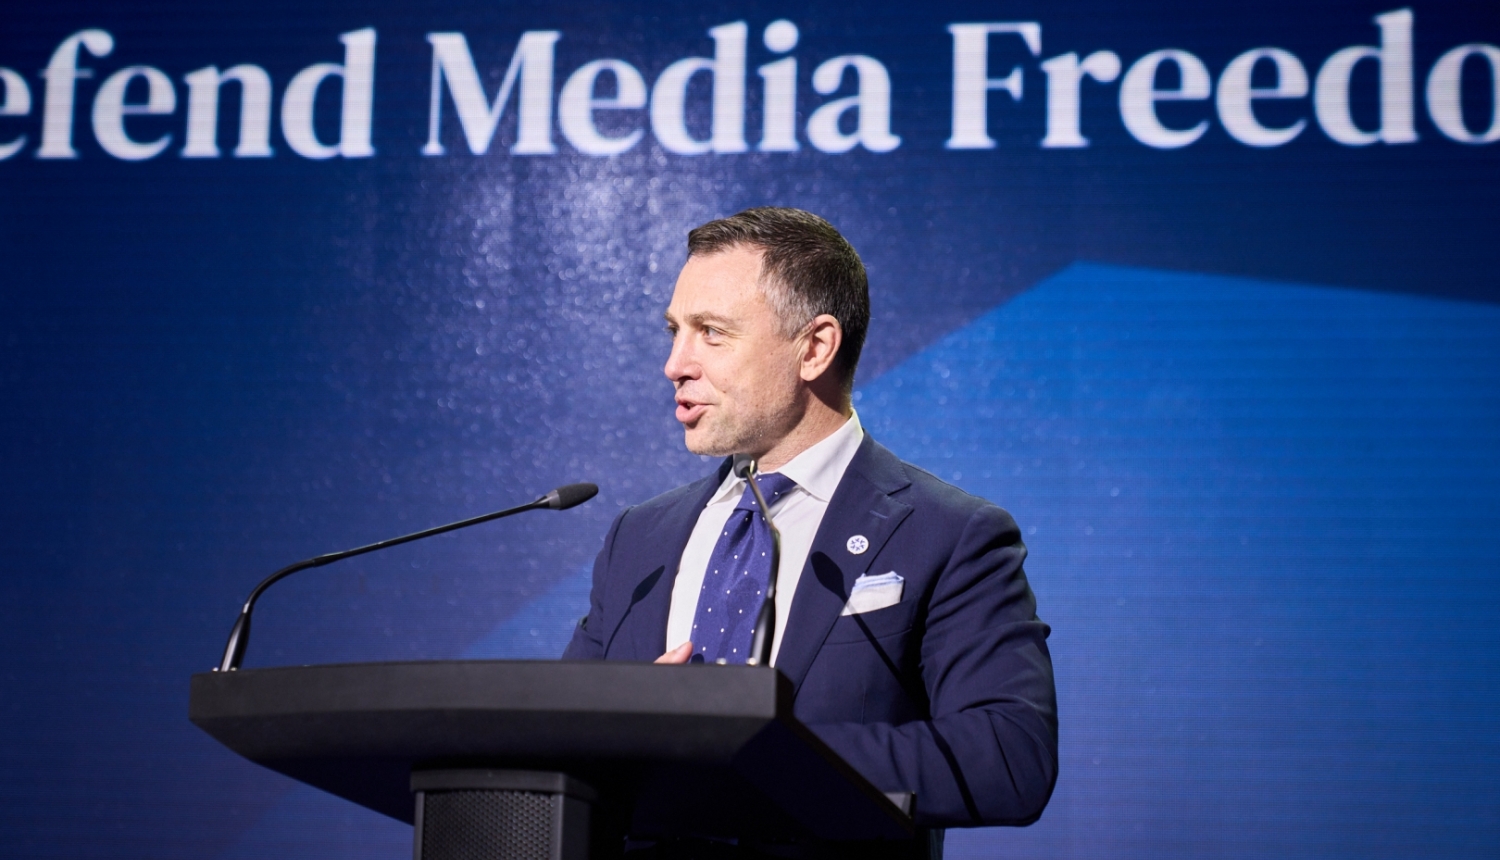 Ārlietu ministrijas īpašais pārstāvis digitālajos jautājumos: mediju brīvība nevar pastāvēt bez vārda brīvības tiešsaistē